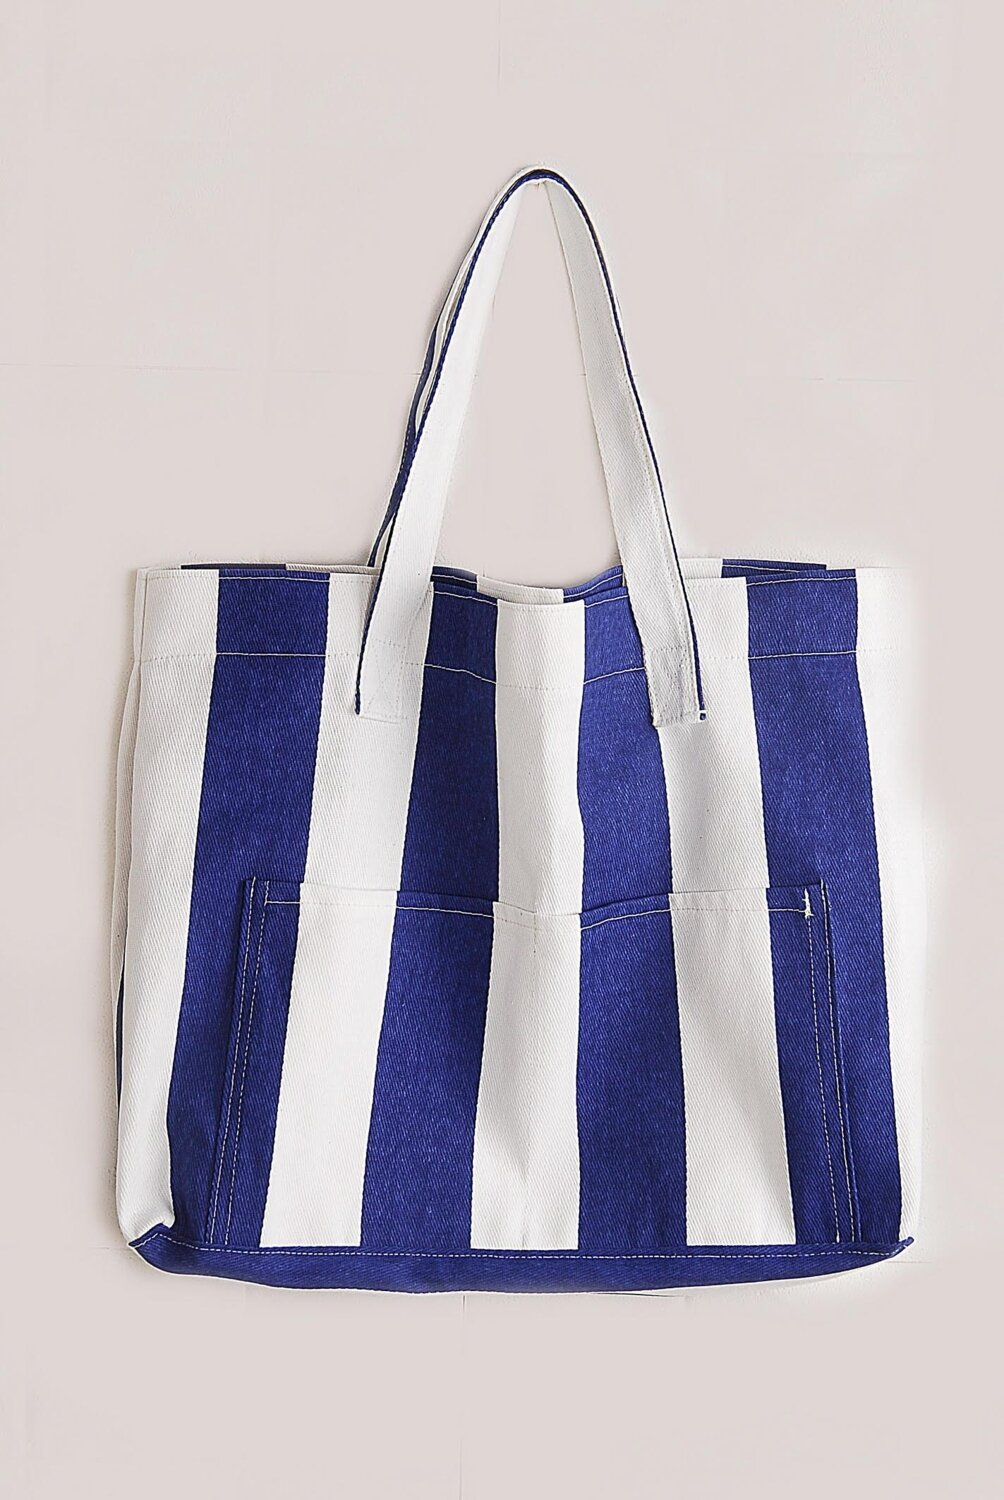 Женская холстовая сумка для пляжа Himarry с двумя карманами голубого цвета.